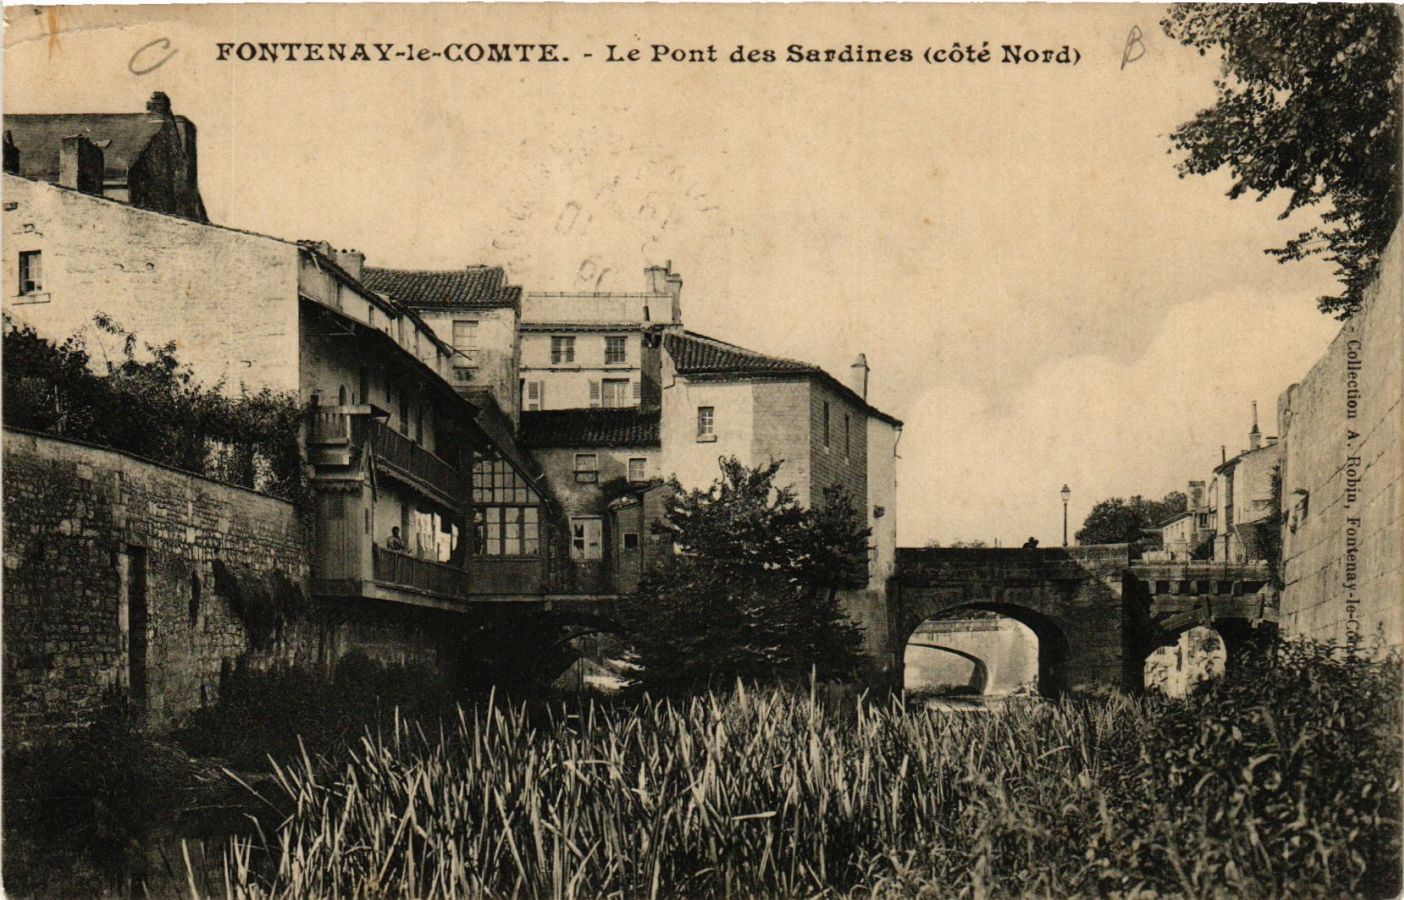 CPA FONTENAY-le-COMTE - Le Pont des Sardines - North Side (637333)